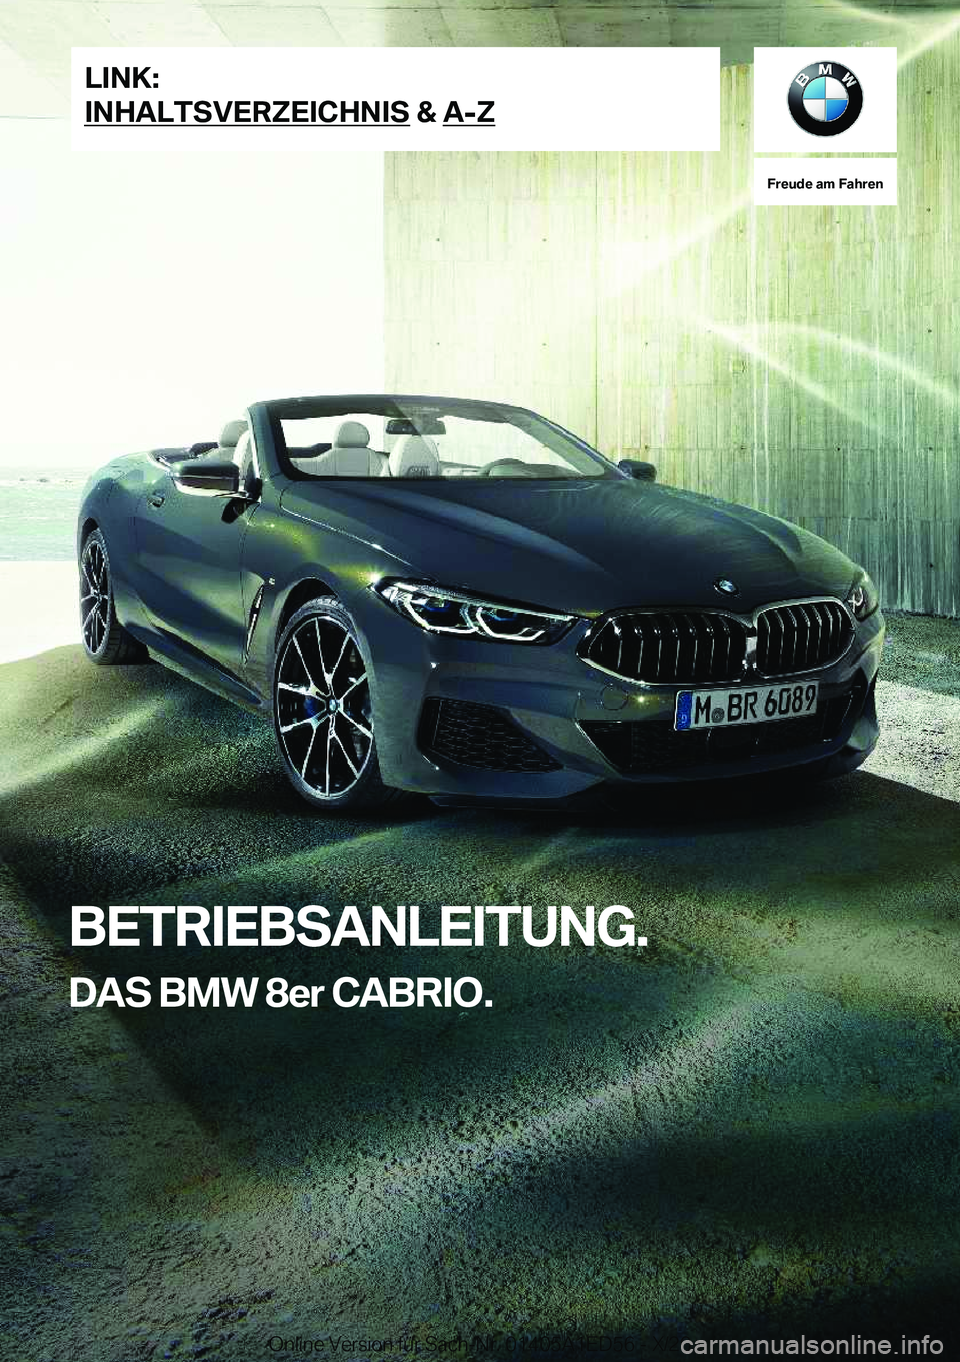 BMW 8 SERIES CONVERTIBLE 2021  Betriebsanleitungen (in German) �F�r�e�u�d�e��a�m��F�a�h�r�e�n
�B�E�T�R�I�E�B�S�A�N�L�E�I�T�U�N�G�.�D�A�S��B�M�W��8�e�r��C�A�B�R�I�O�.�L�I�N�K�:
�I�N�H�A�L�T�S�V�E�R�Z�E�I�C�H�N�I�S��&��A�-�Z�O�n�l�i�n�e��V�e�r�s�i�o�n��f�